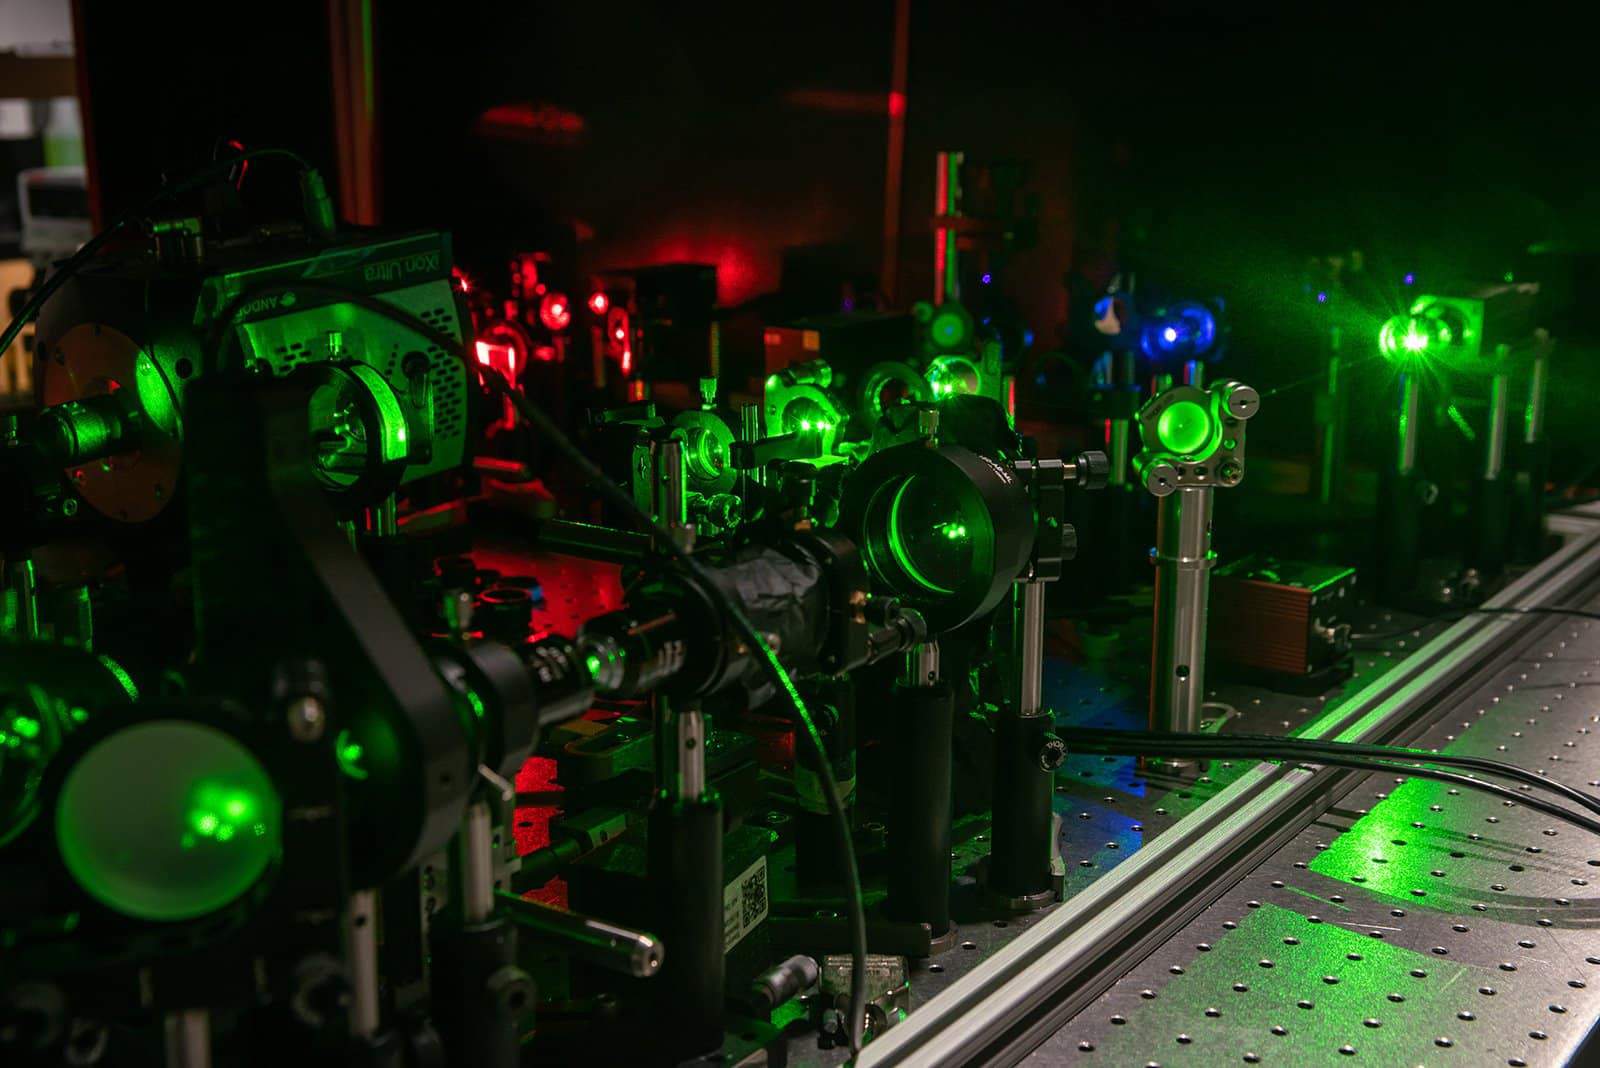 量子もつれを利用し顕微鏡の解像度を2倍にする方法が開発される